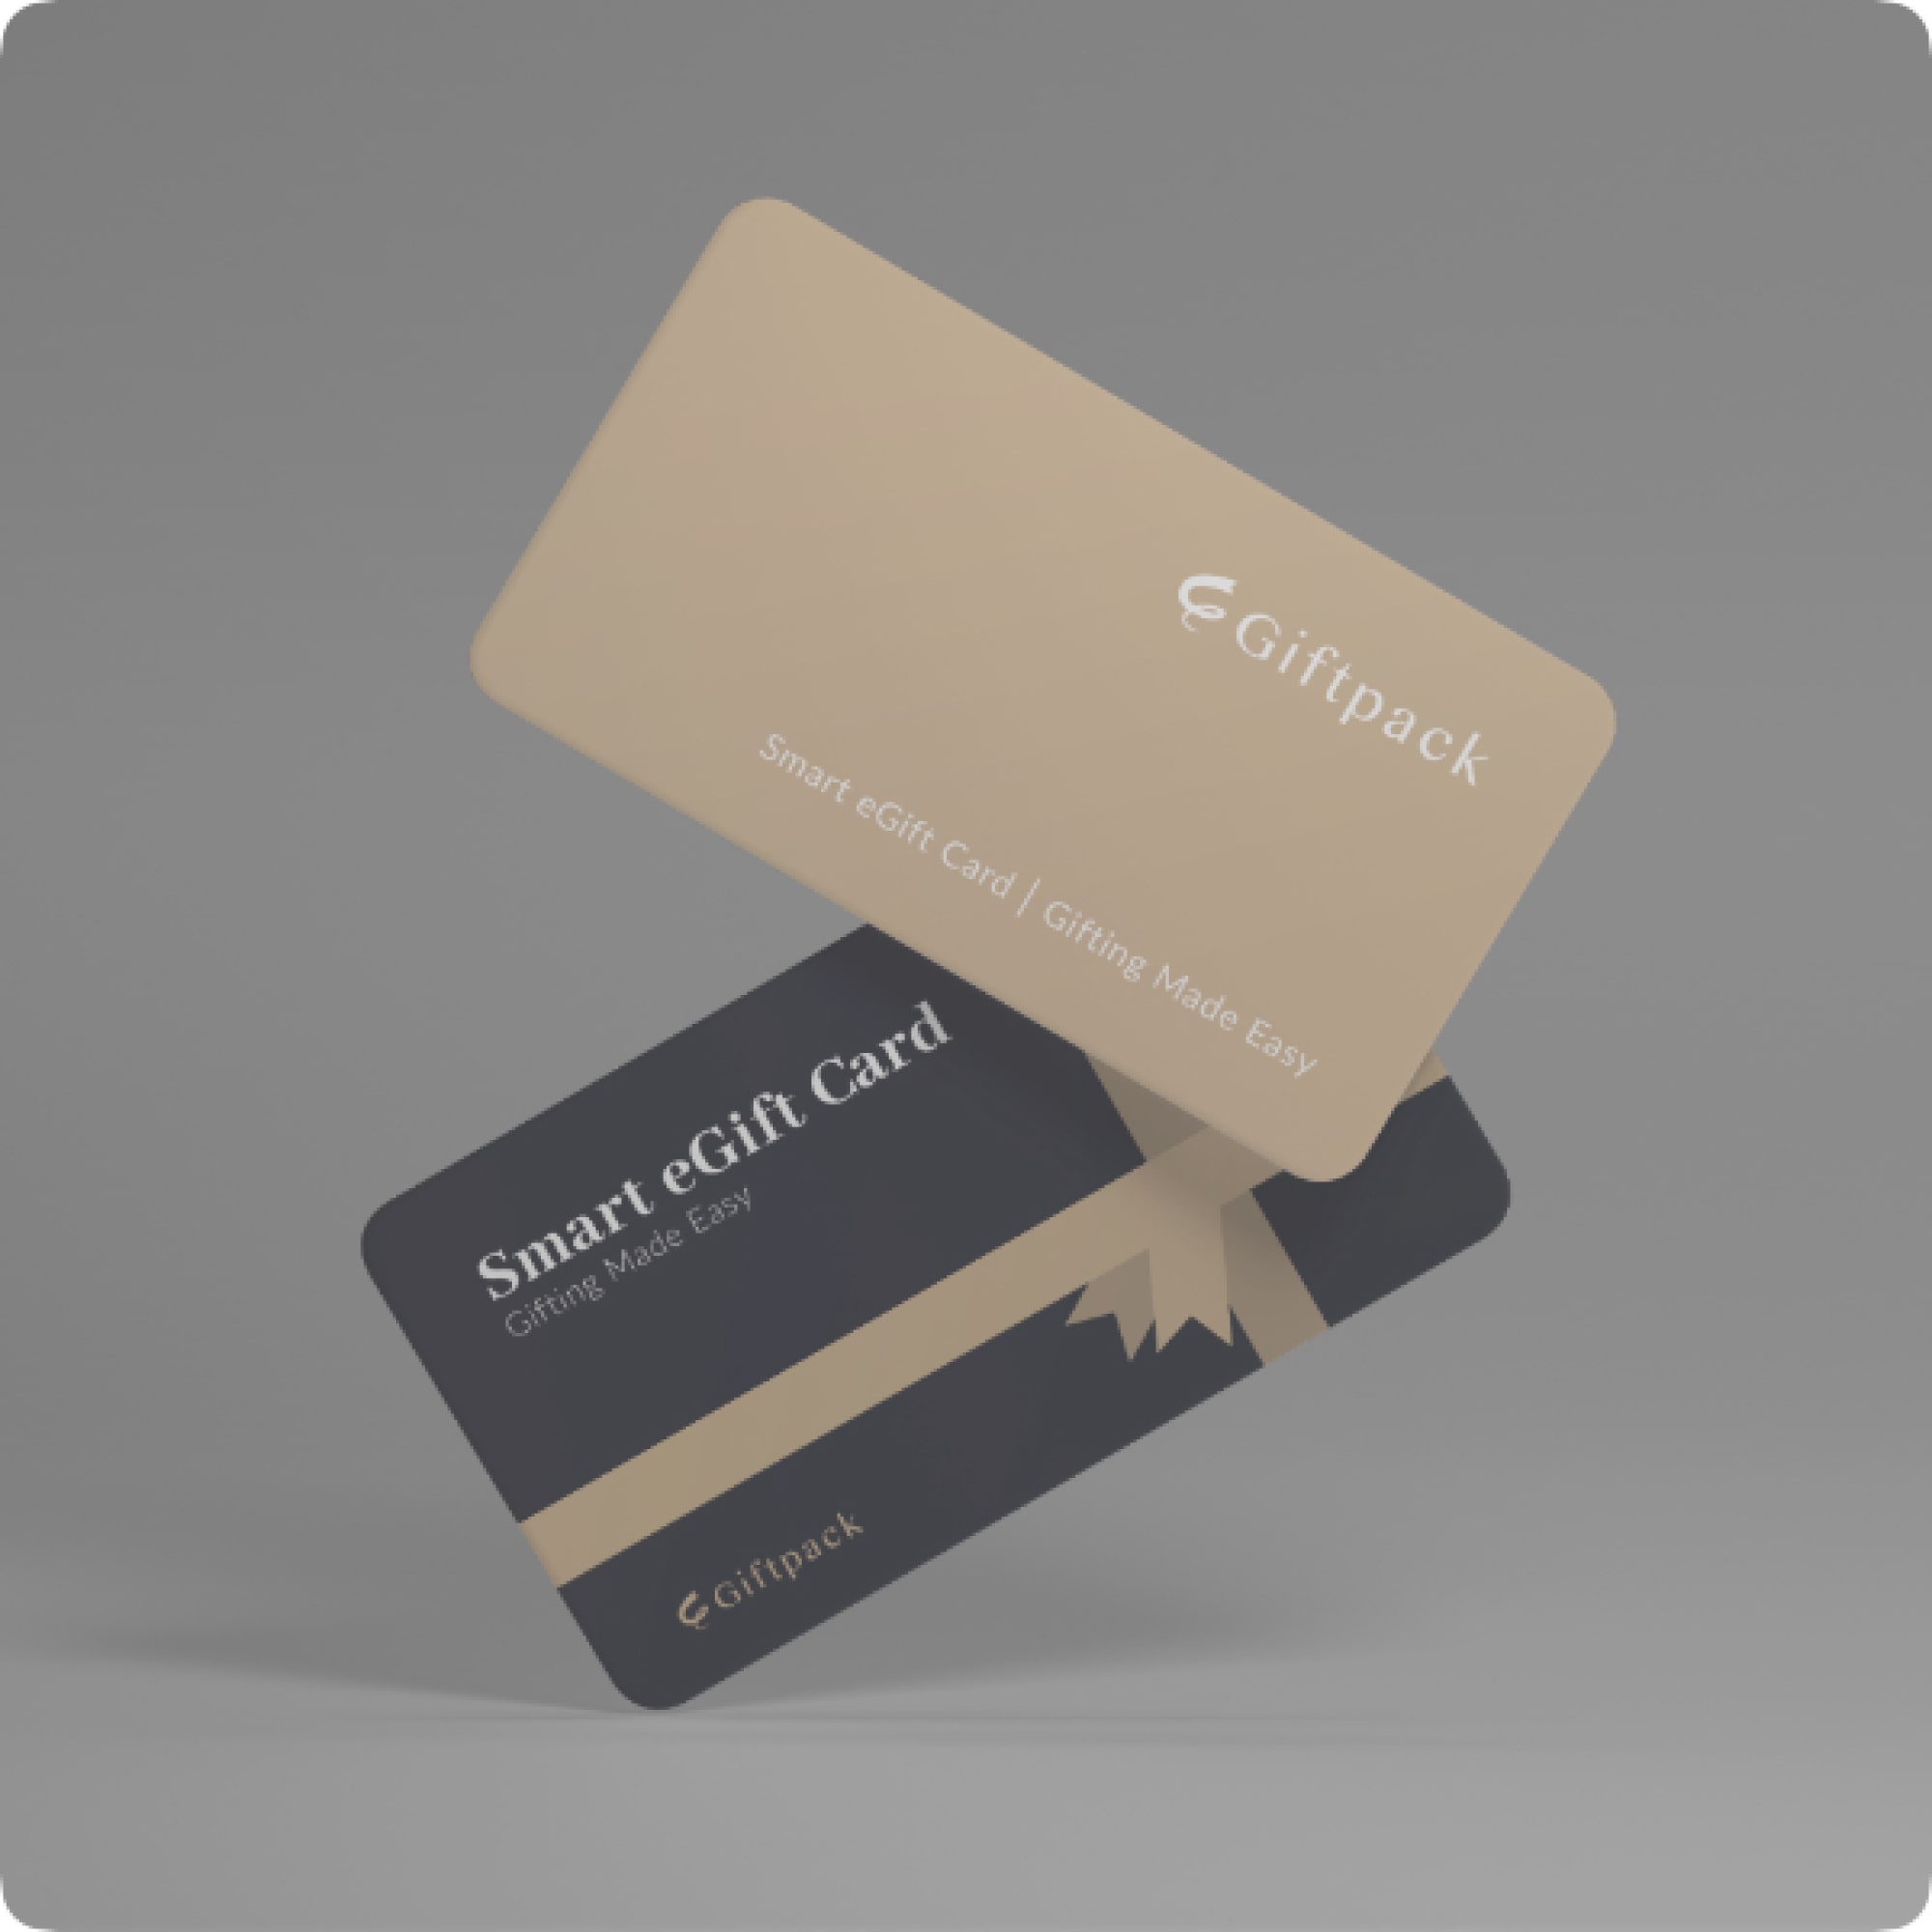 Giftpack Smart eGift Card for Employee Gift Card Programs